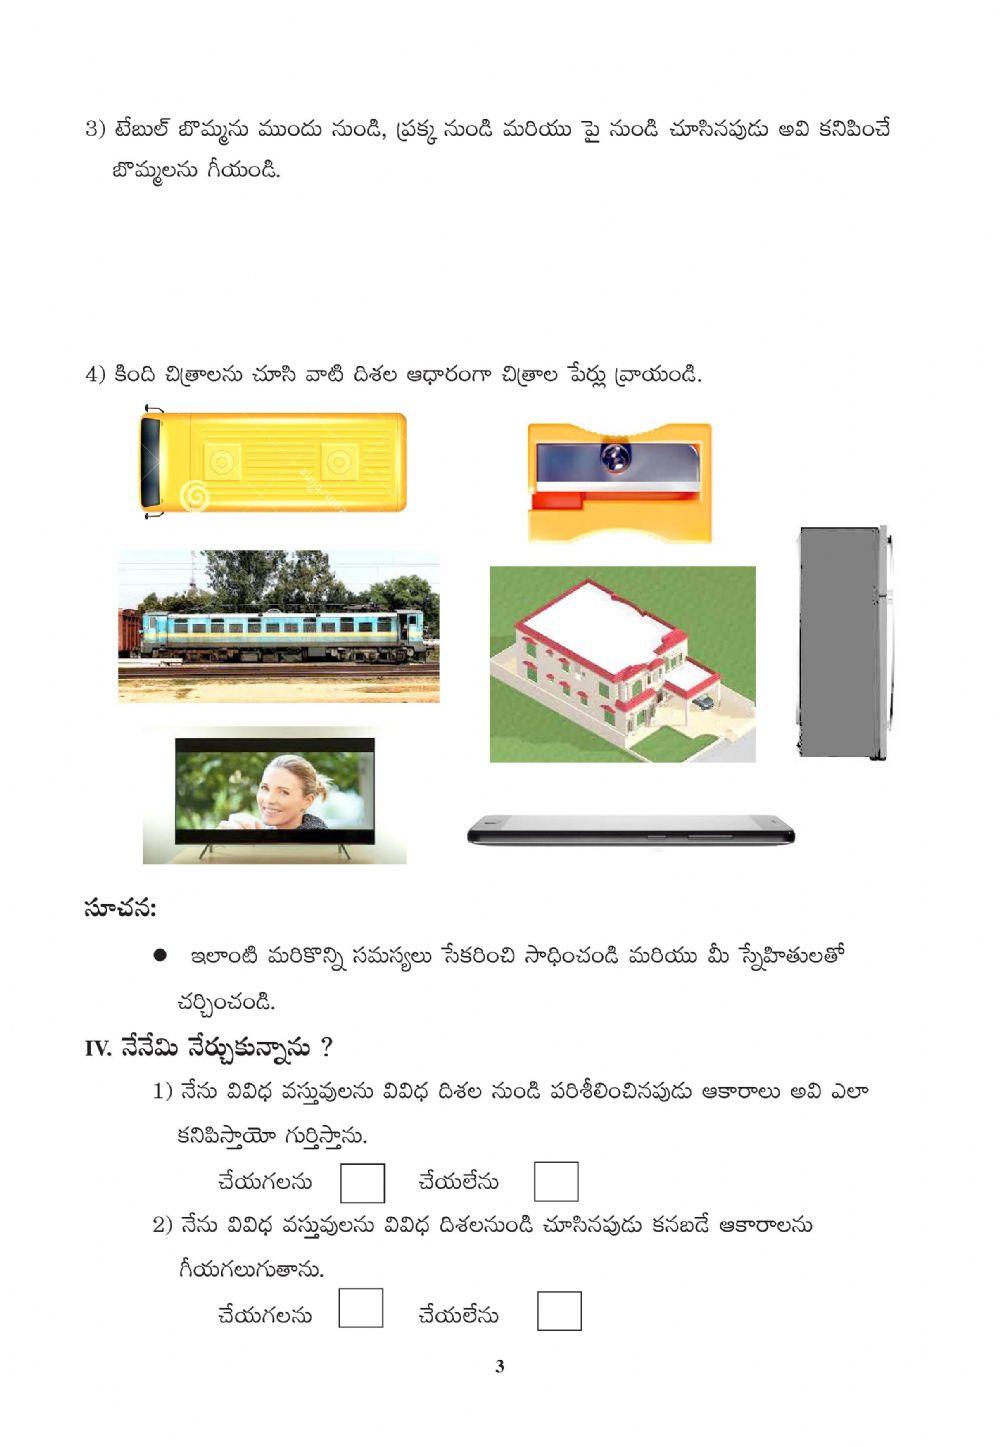 Scert work sheet telangana 4